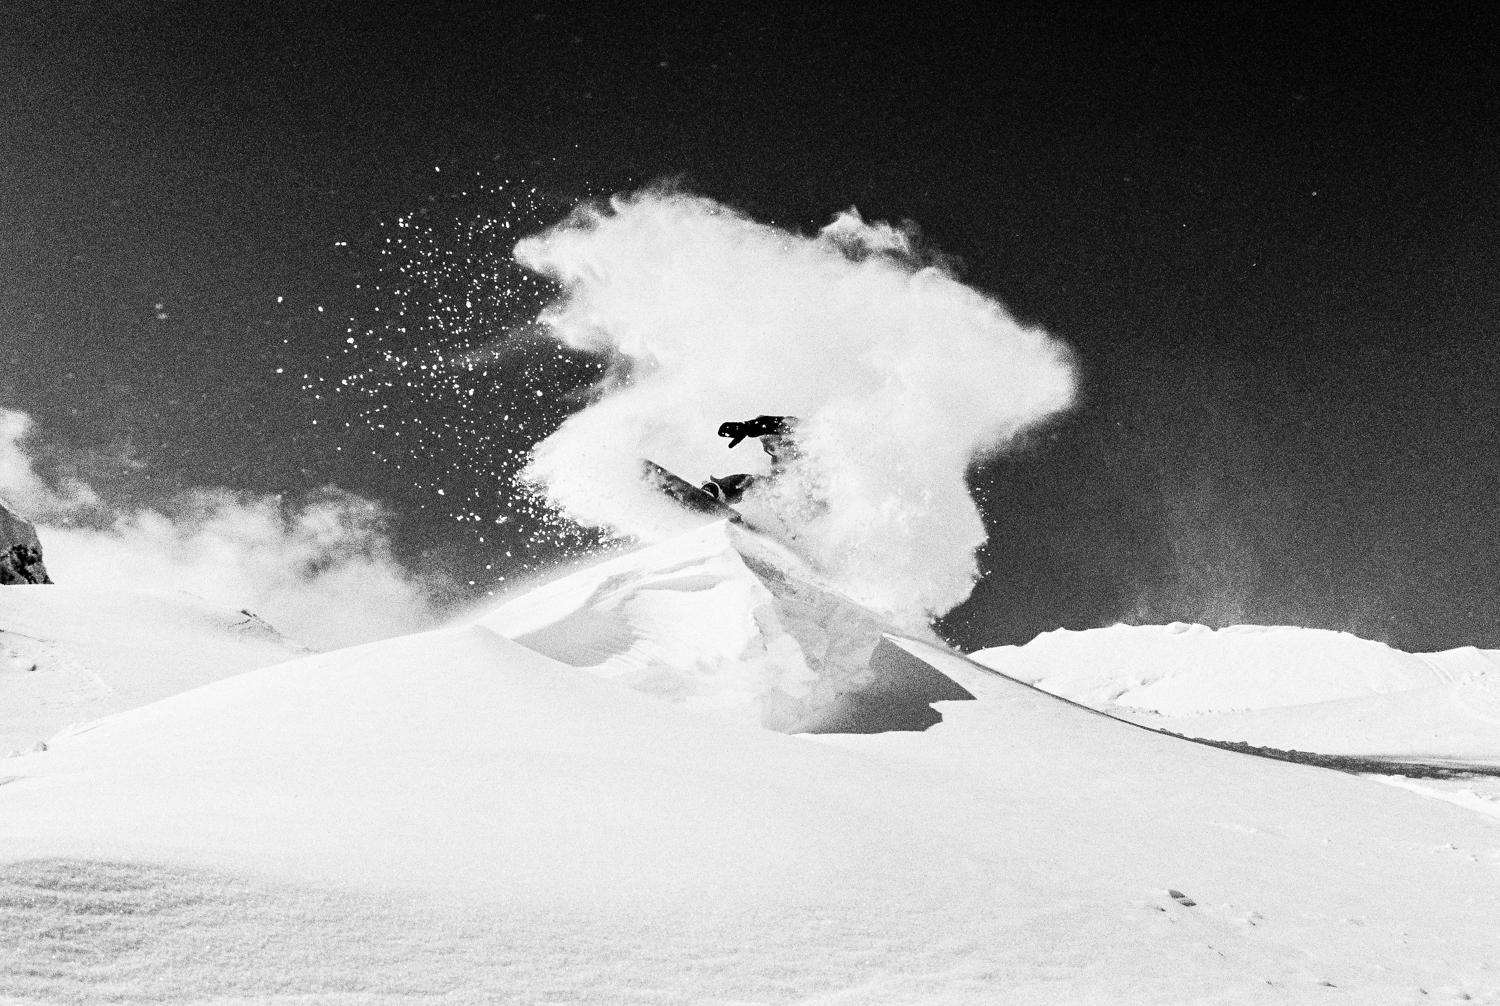 Carlos Blanchard Black and White Photograph – Snowdance - Mountain Snowboarding Schwarz-Weiß-Kunstfotografie